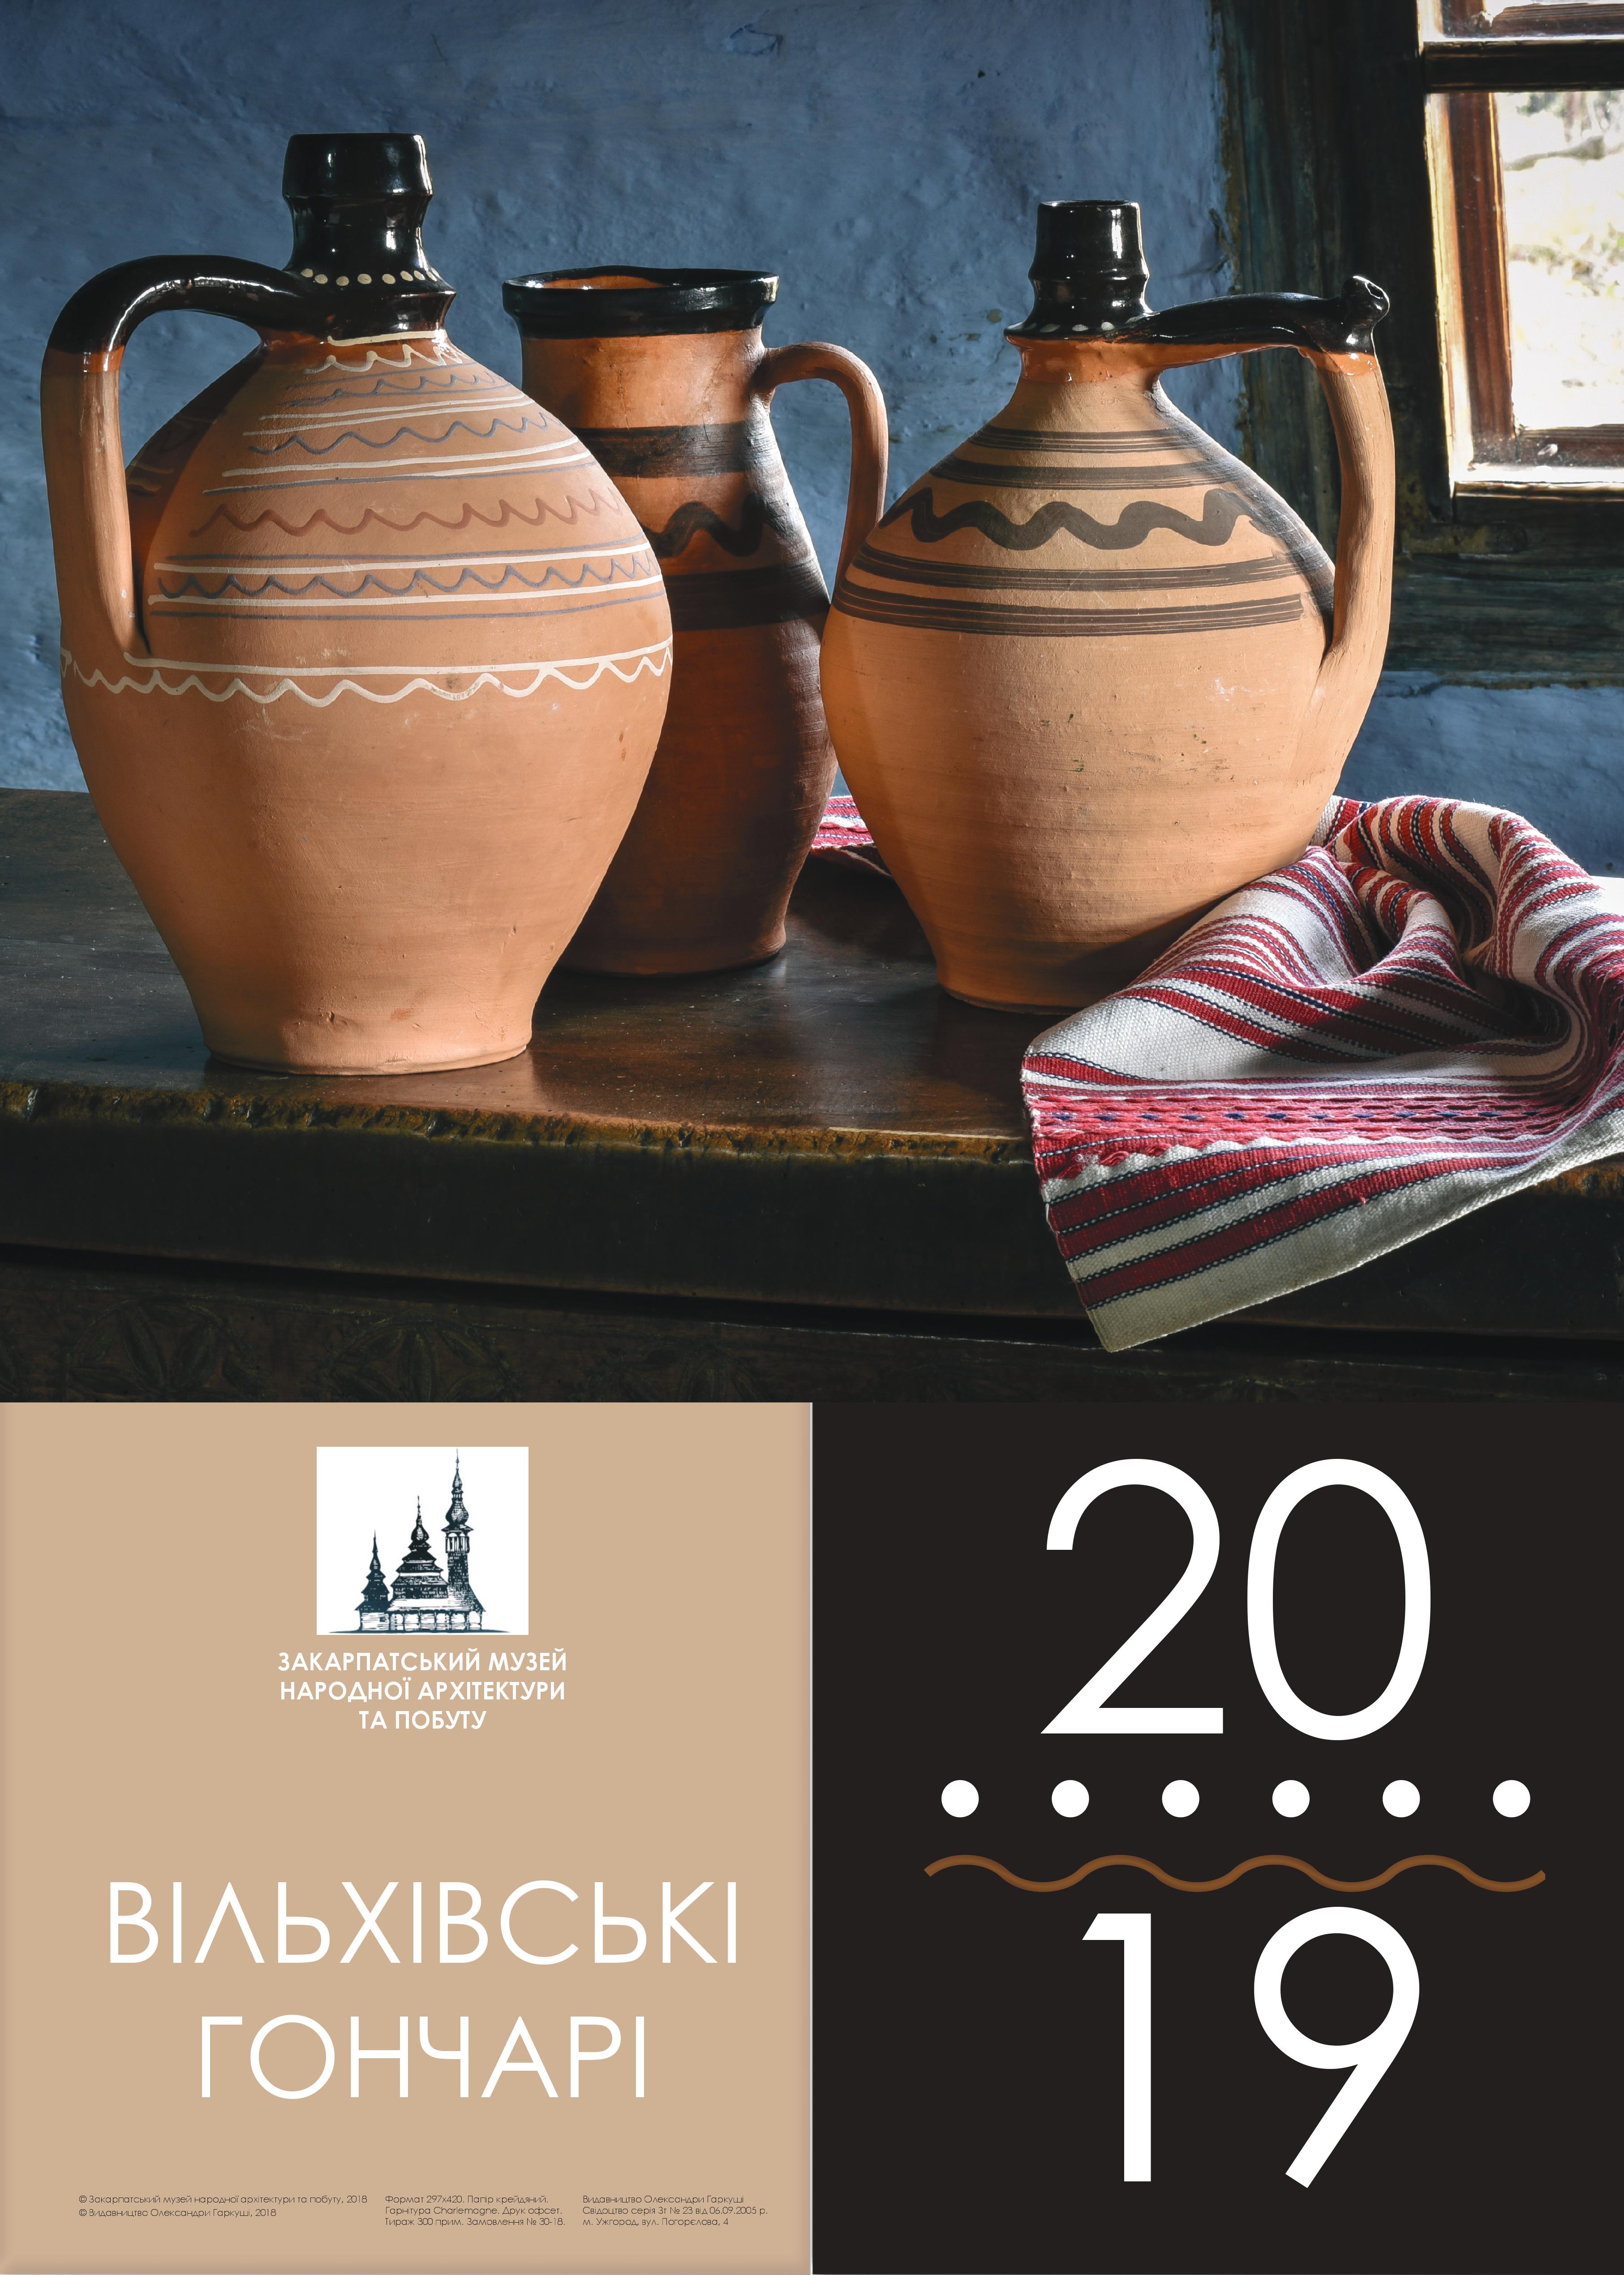 Вийшов друком календар на 2019 рік від ужгородського скансену (ФОТО)